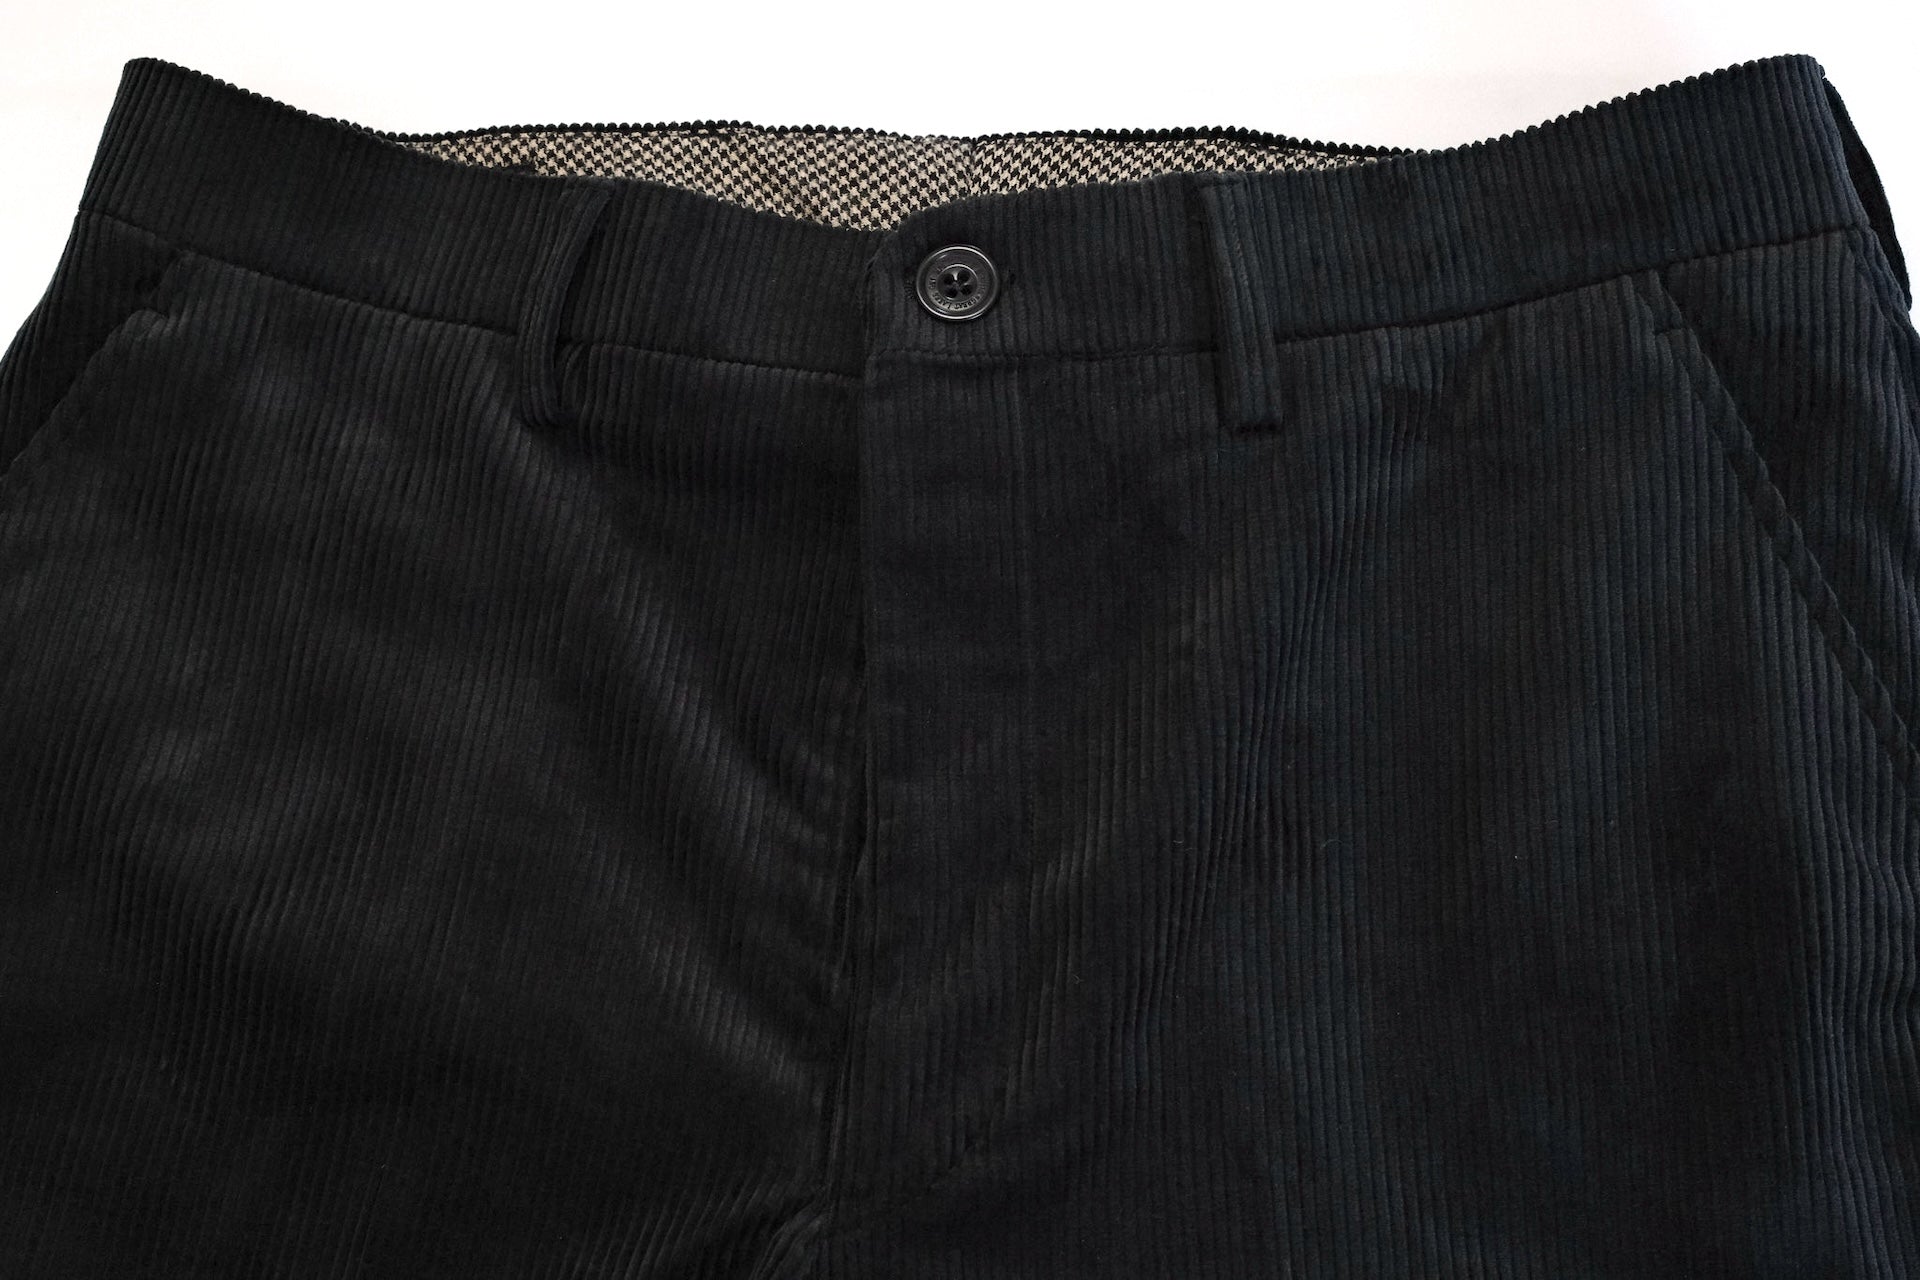 Freewheelers "Skagit" Corduroy Trousers (Black)